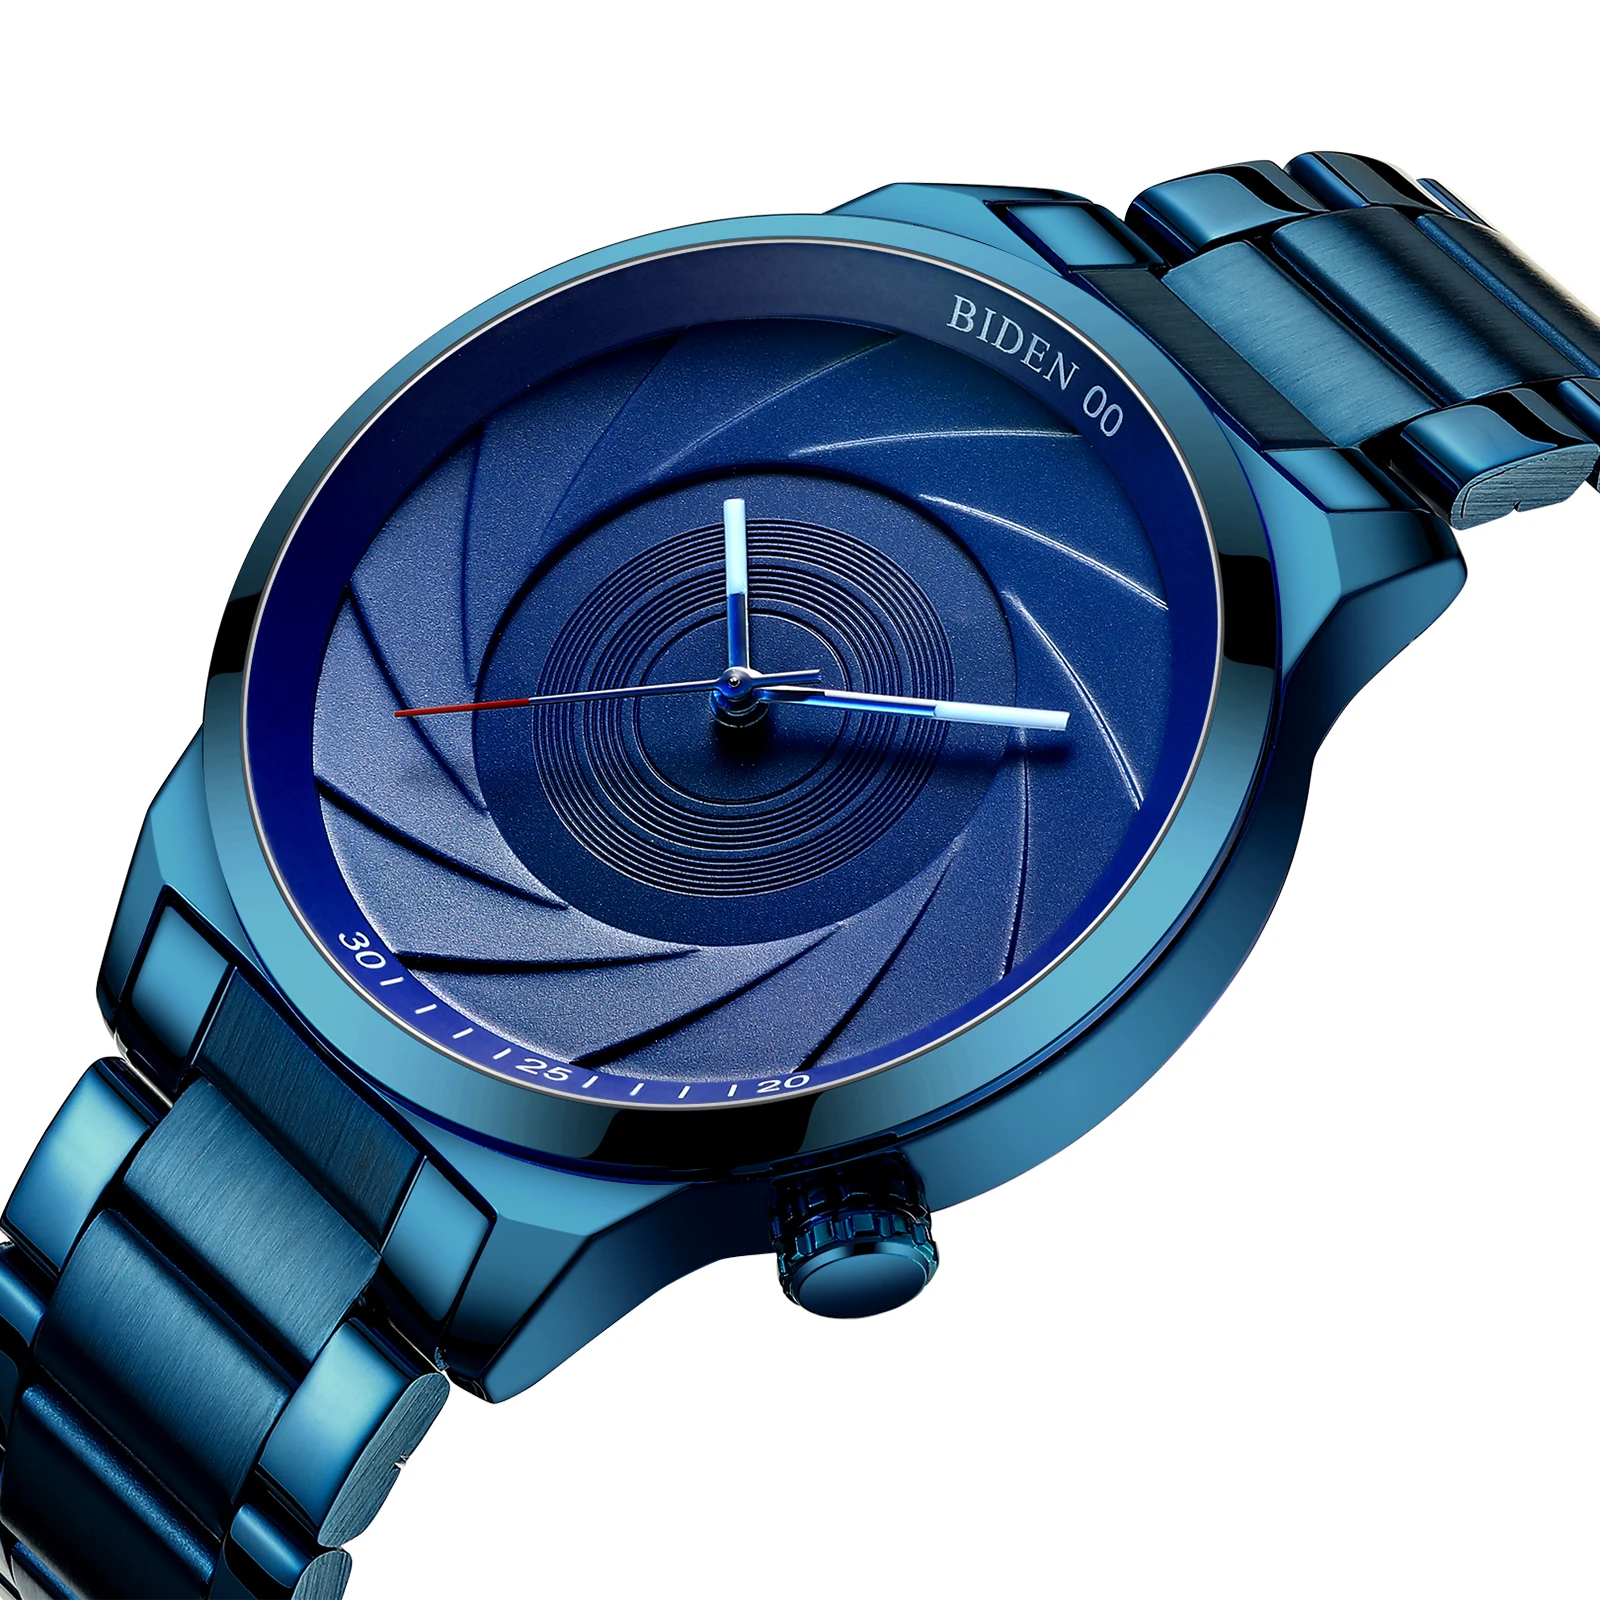 

BIDEN Creative Mens Watches 2019 Fashion Blue Swirl Stainless Steel Quartz Relogio Masculino Top Brand Luxury Unique Wrist Watch